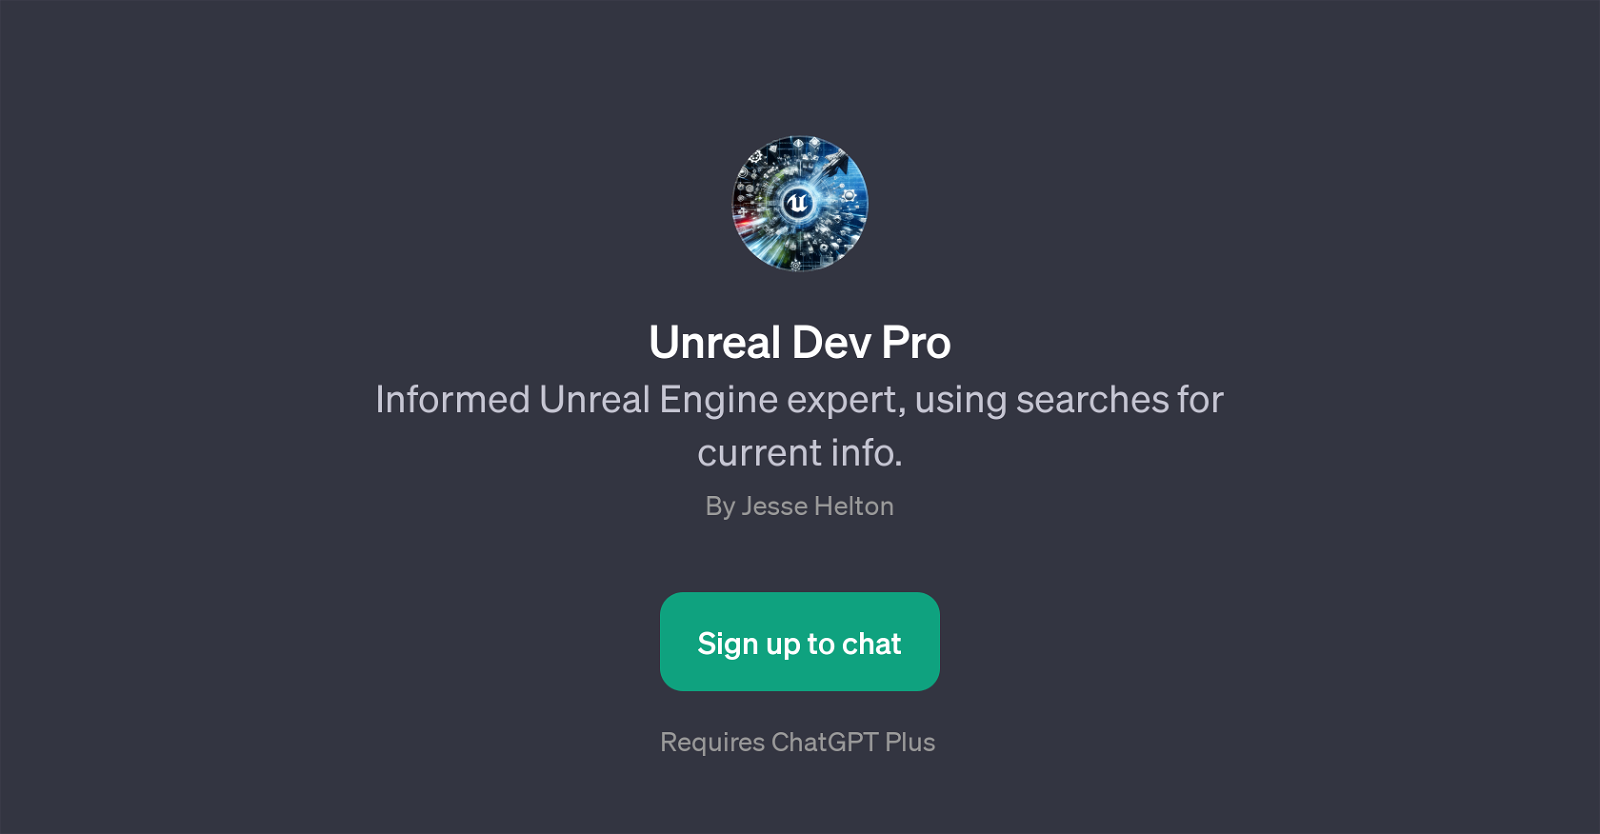 Unreal Dev Pro website